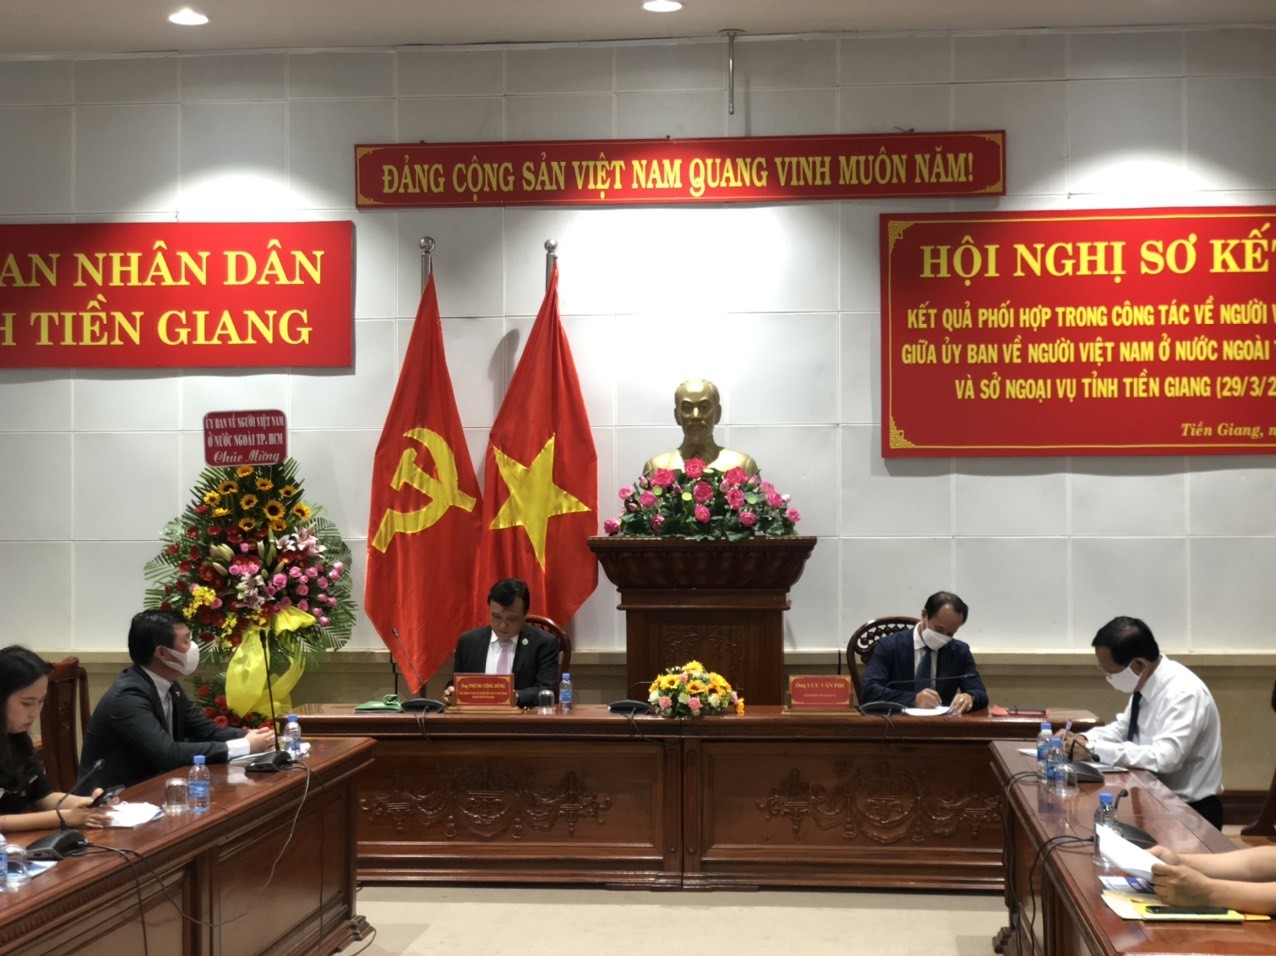 Phối hợp hiệu quả thu hút nguồn lực người Việt Nam ở nước ngoài